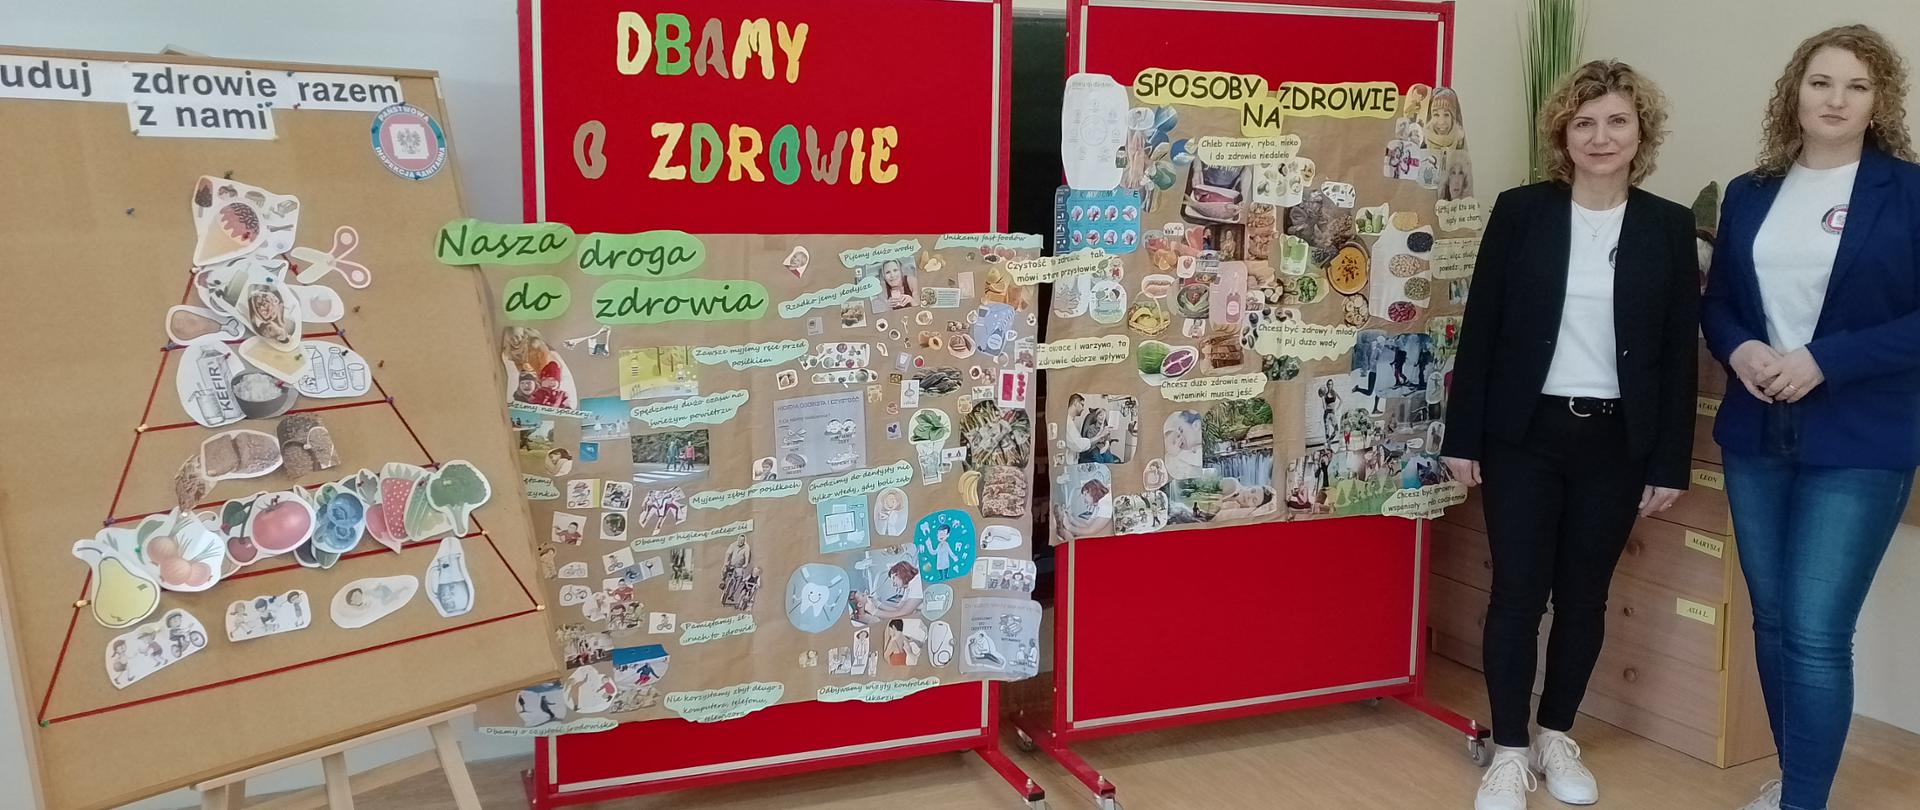 Pracownicy Powiatowej Stacji Sanitarno-Epidemiologicznej w Garwolinie na tle wystawy materiałów o zdrowym stylu życia w szkole Podstawowej w Górznie.